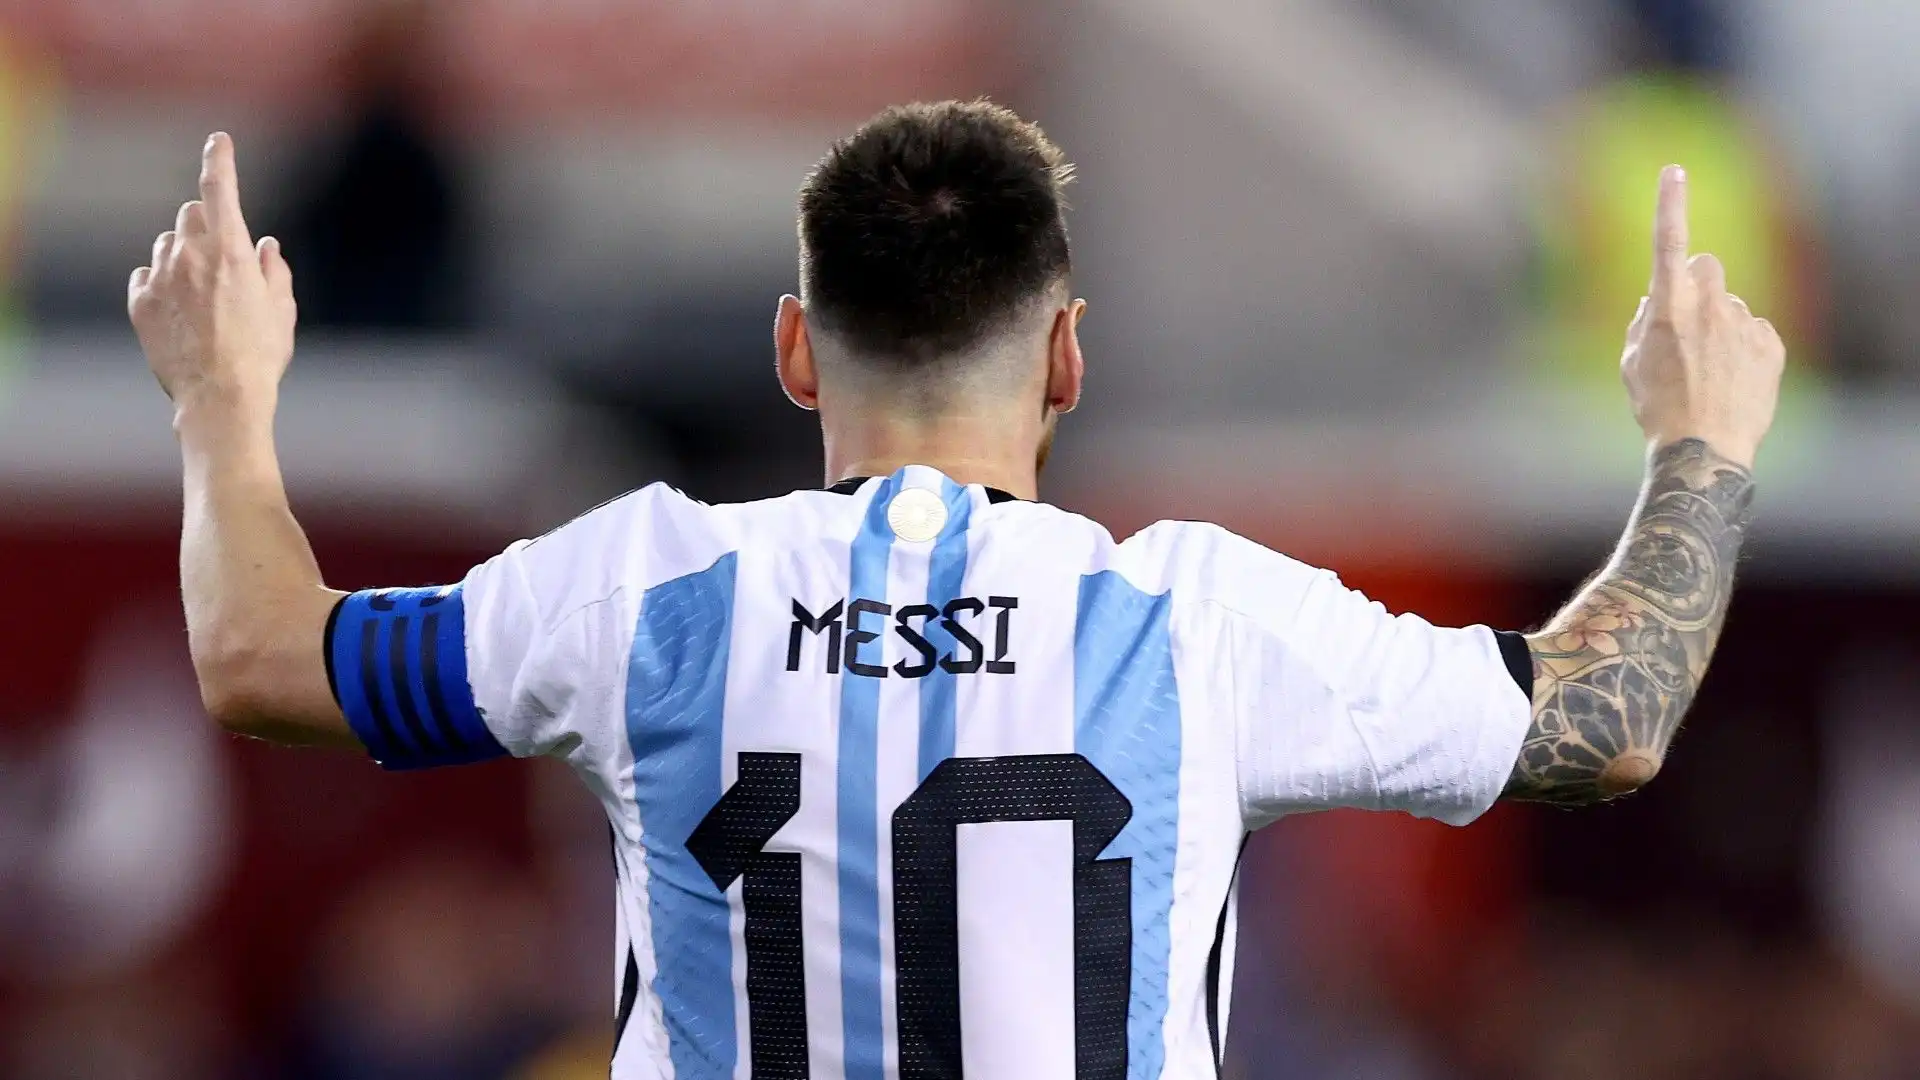 Nel 2014 Lionel Messi è stato sconfitto in finale del Mondiale. Quale era l'avversario?
A- Germania
B- Italia
C- Francia